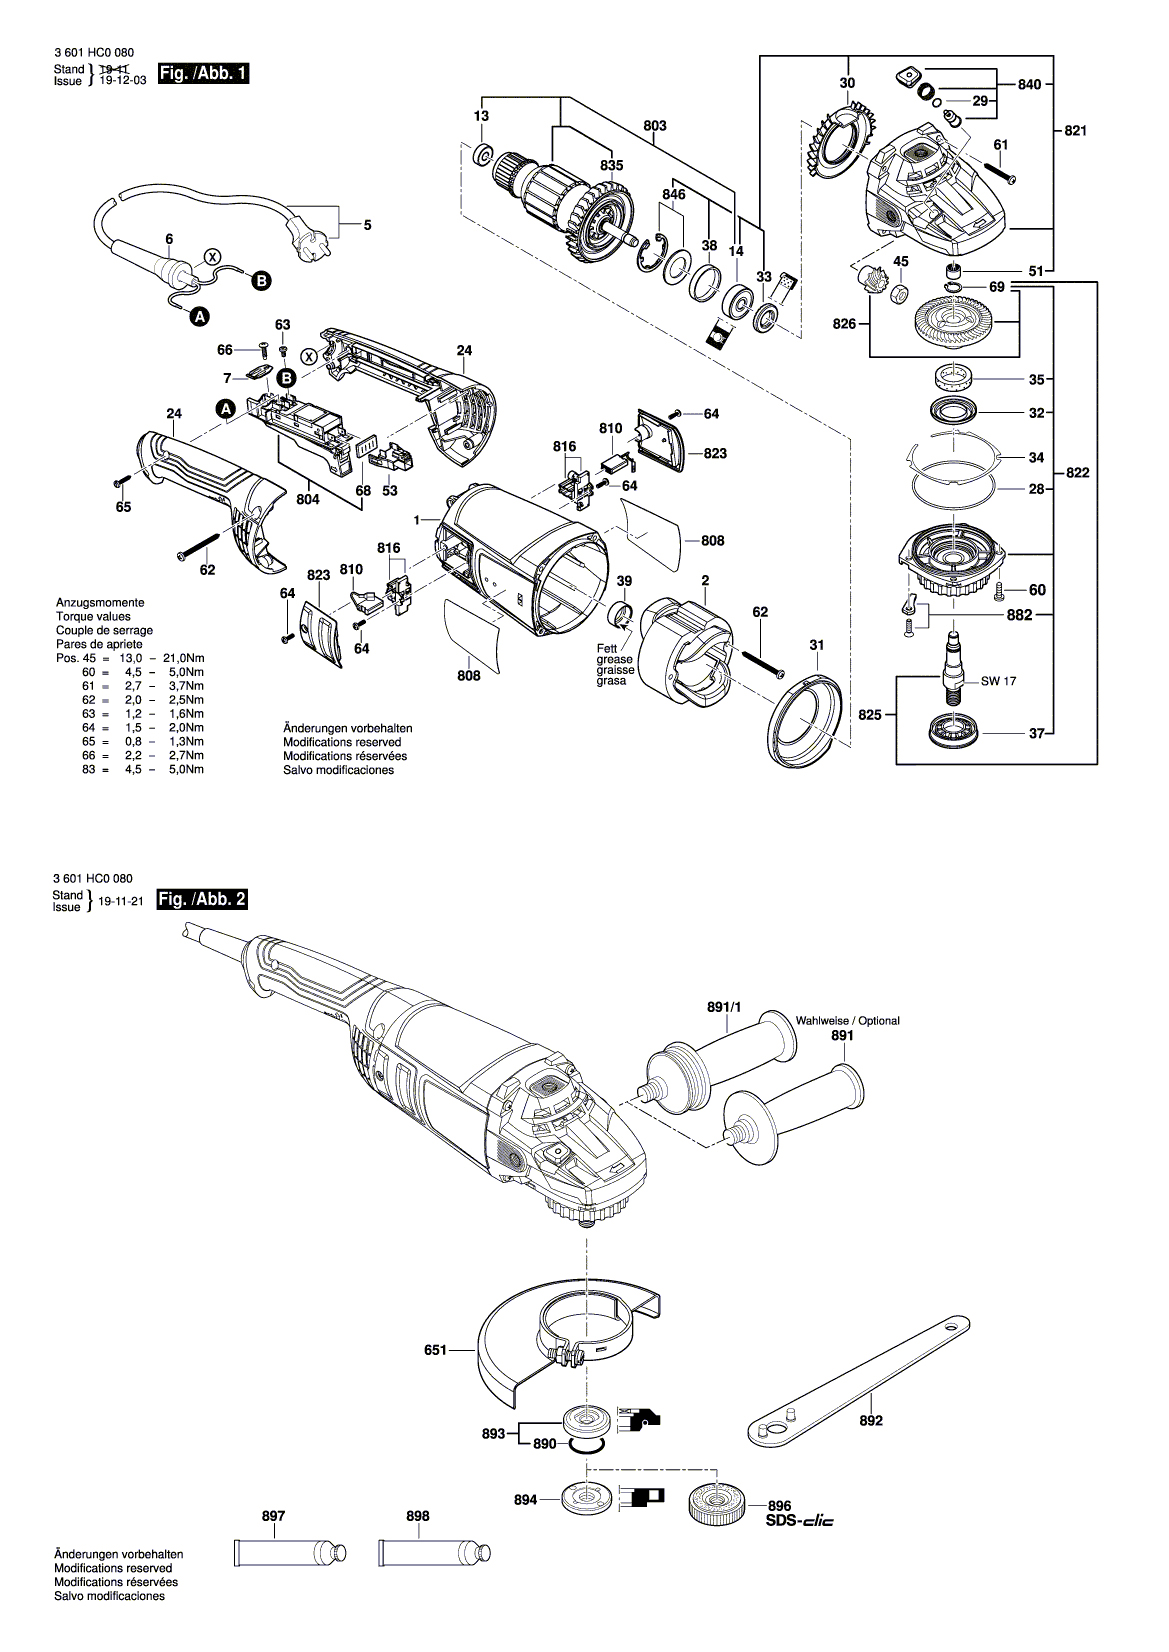 Схема на Угловая шлифмашина Bosch GWS 2200 (3 601 HC0 080)